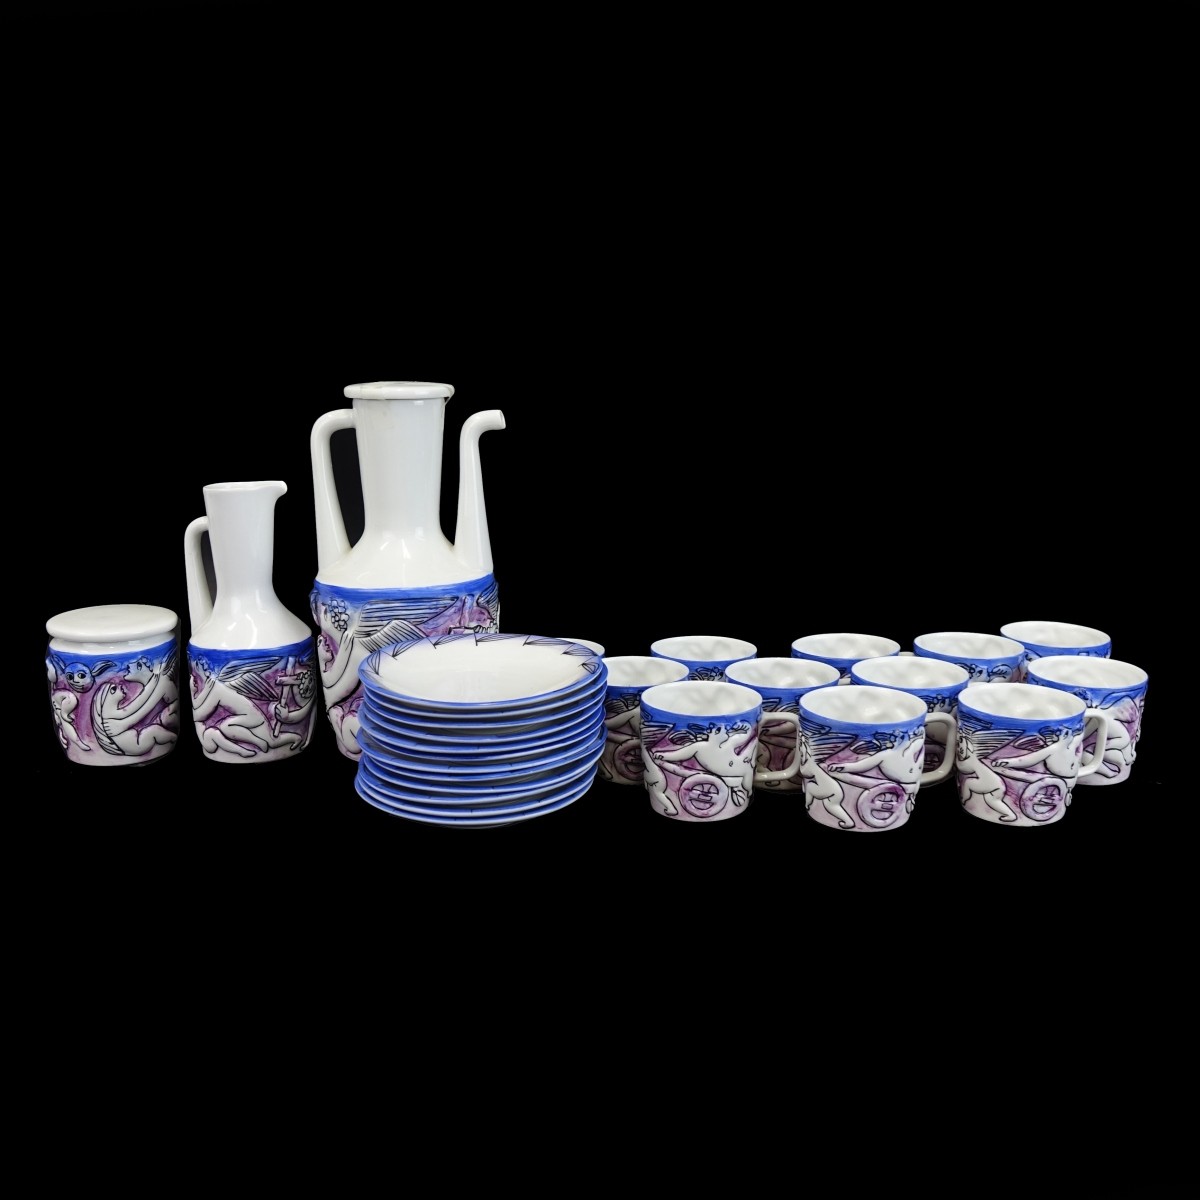 Service for Twelve Castro Porcelain Tea Set.